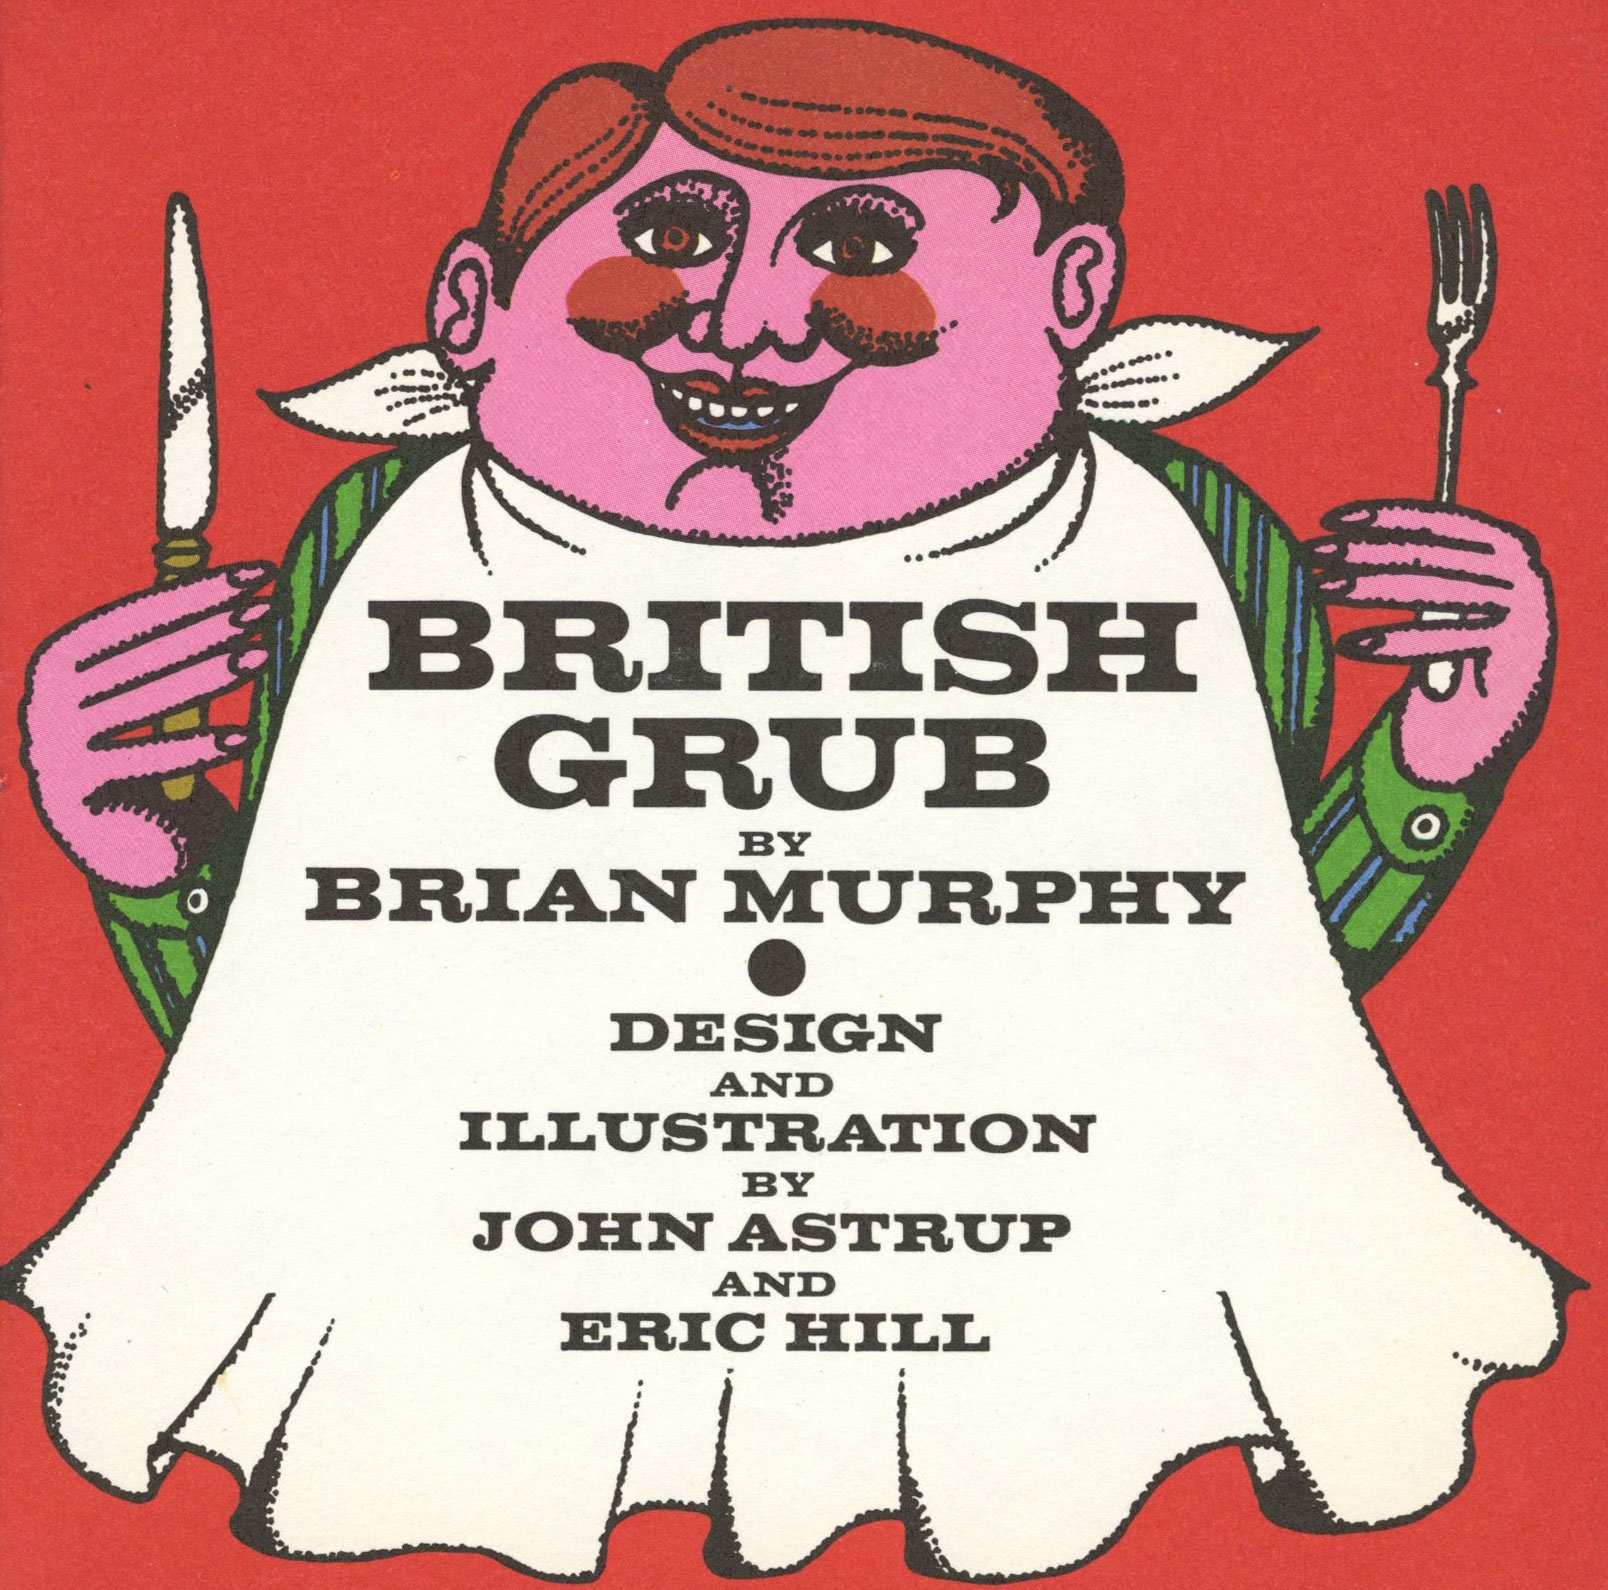 BRITISH GRUB